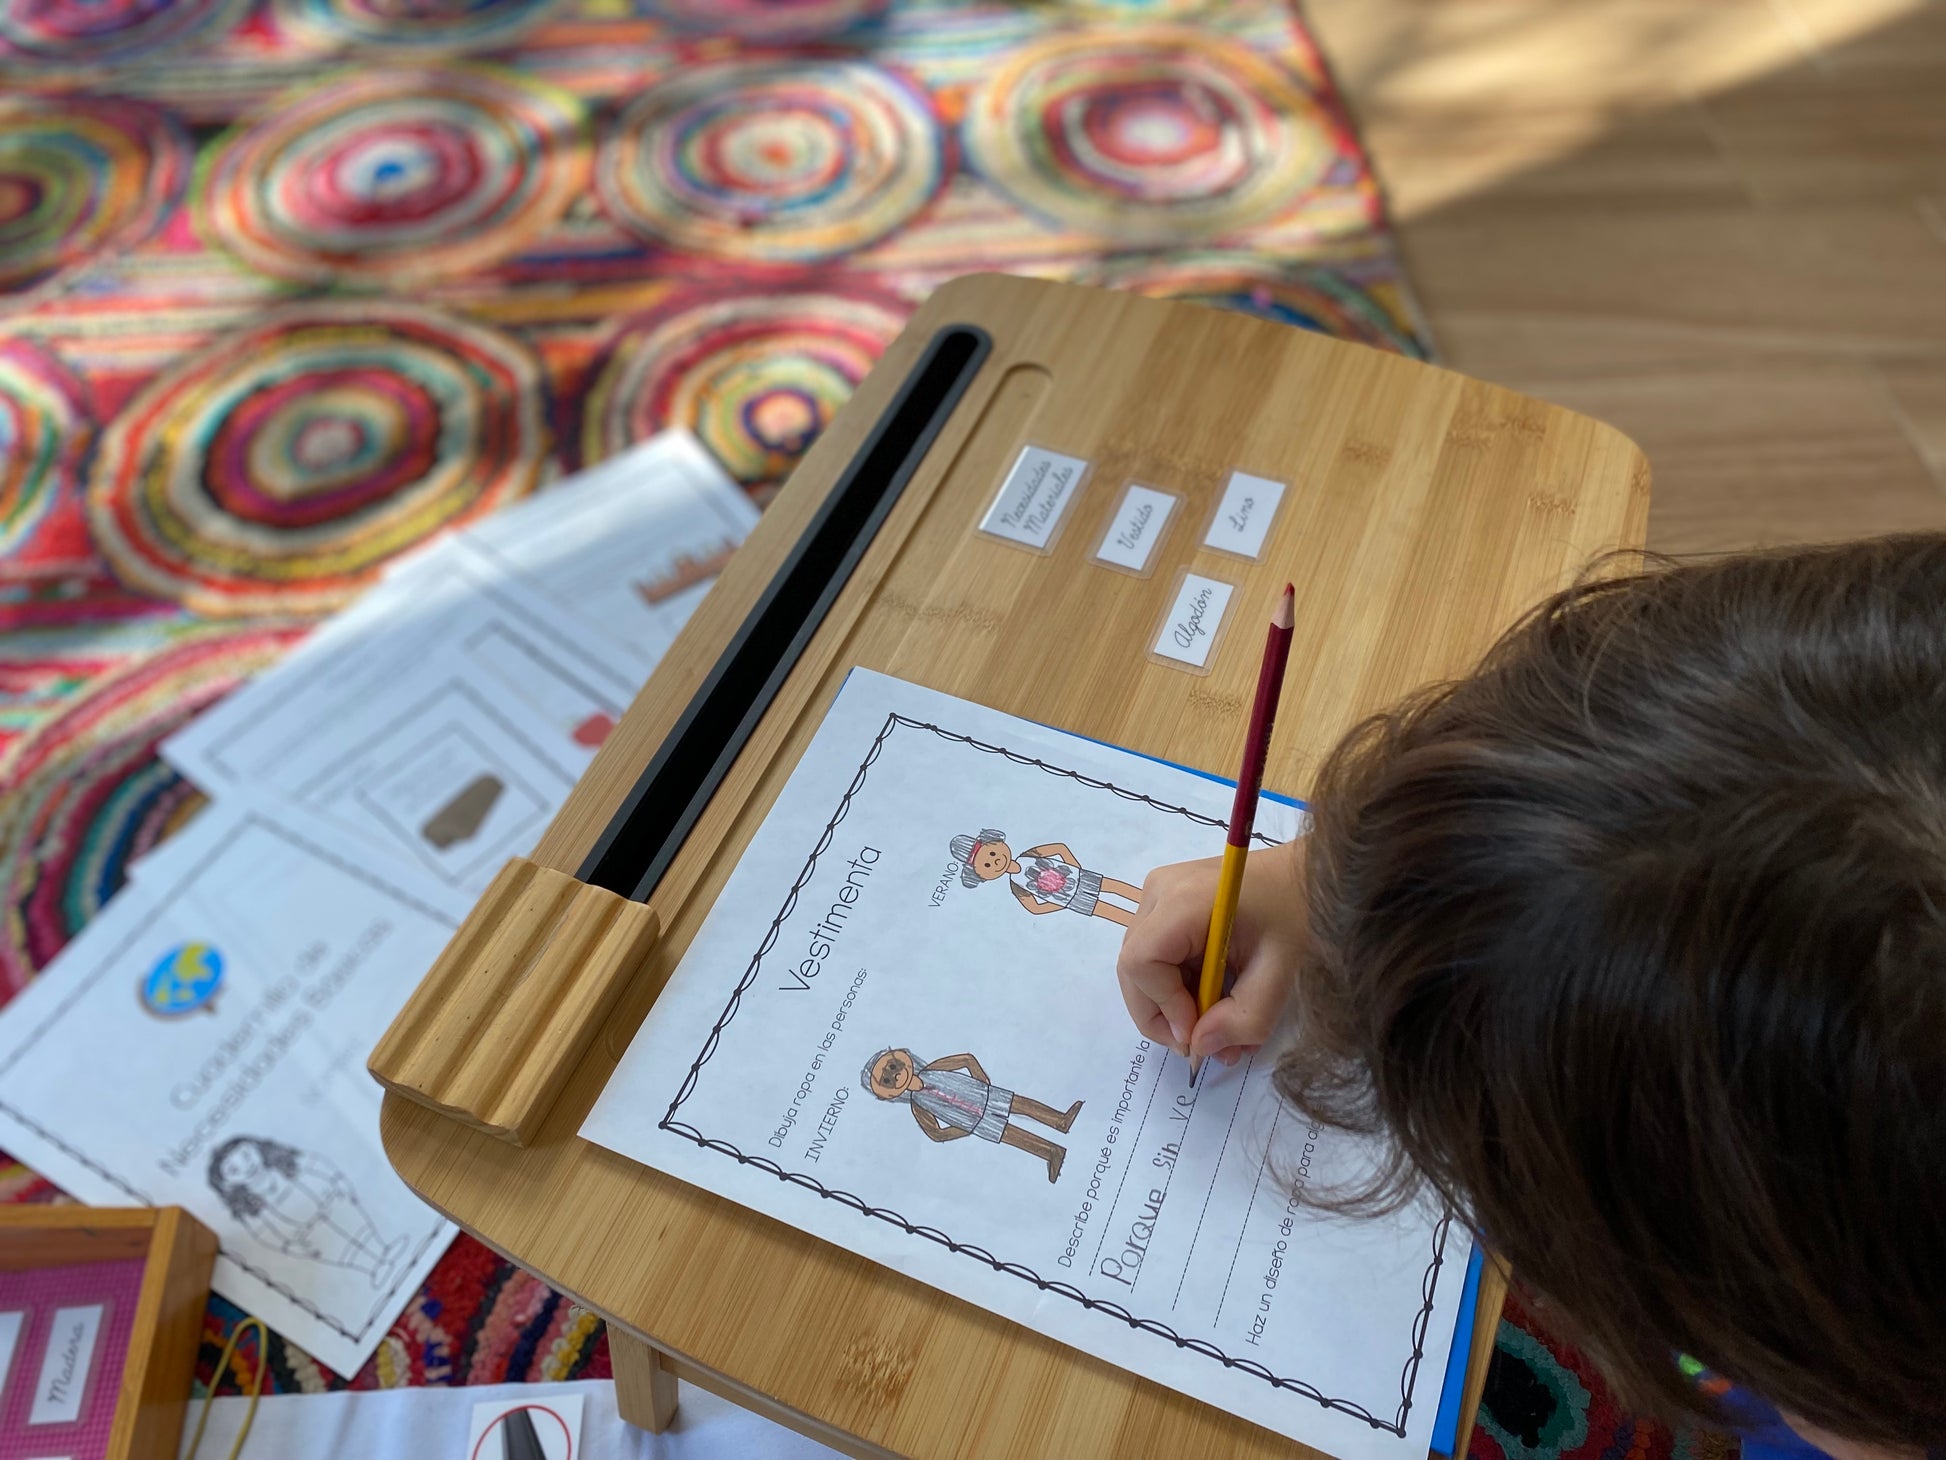 Cuadernillo de trabajo de Necesidades Básicas para primaria Montessori (Fundamental Human Needs Student Workbook) - montessorikiwi